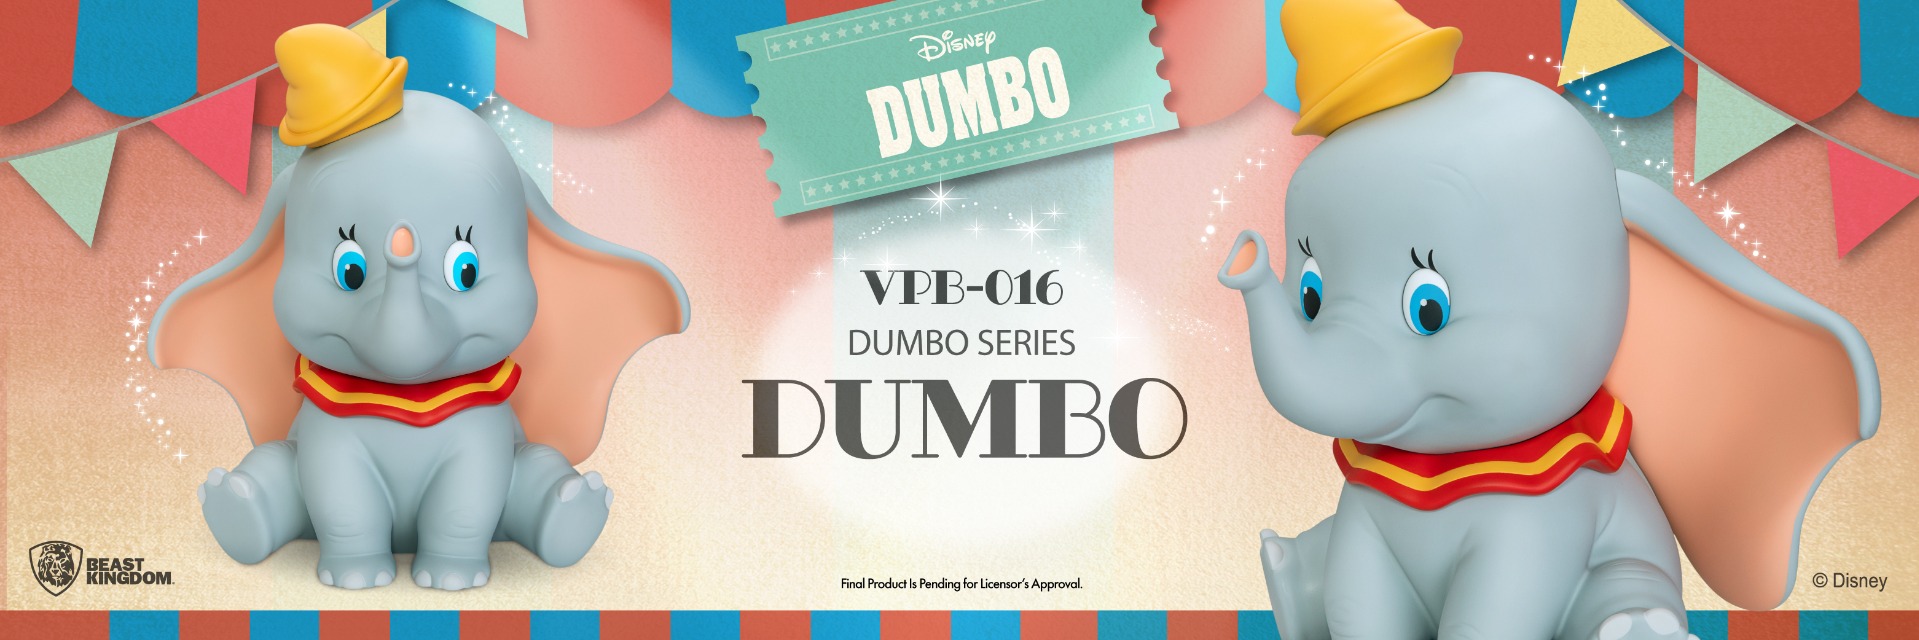 VPB-016 Dumbo Series Functional Figure: Dumbo